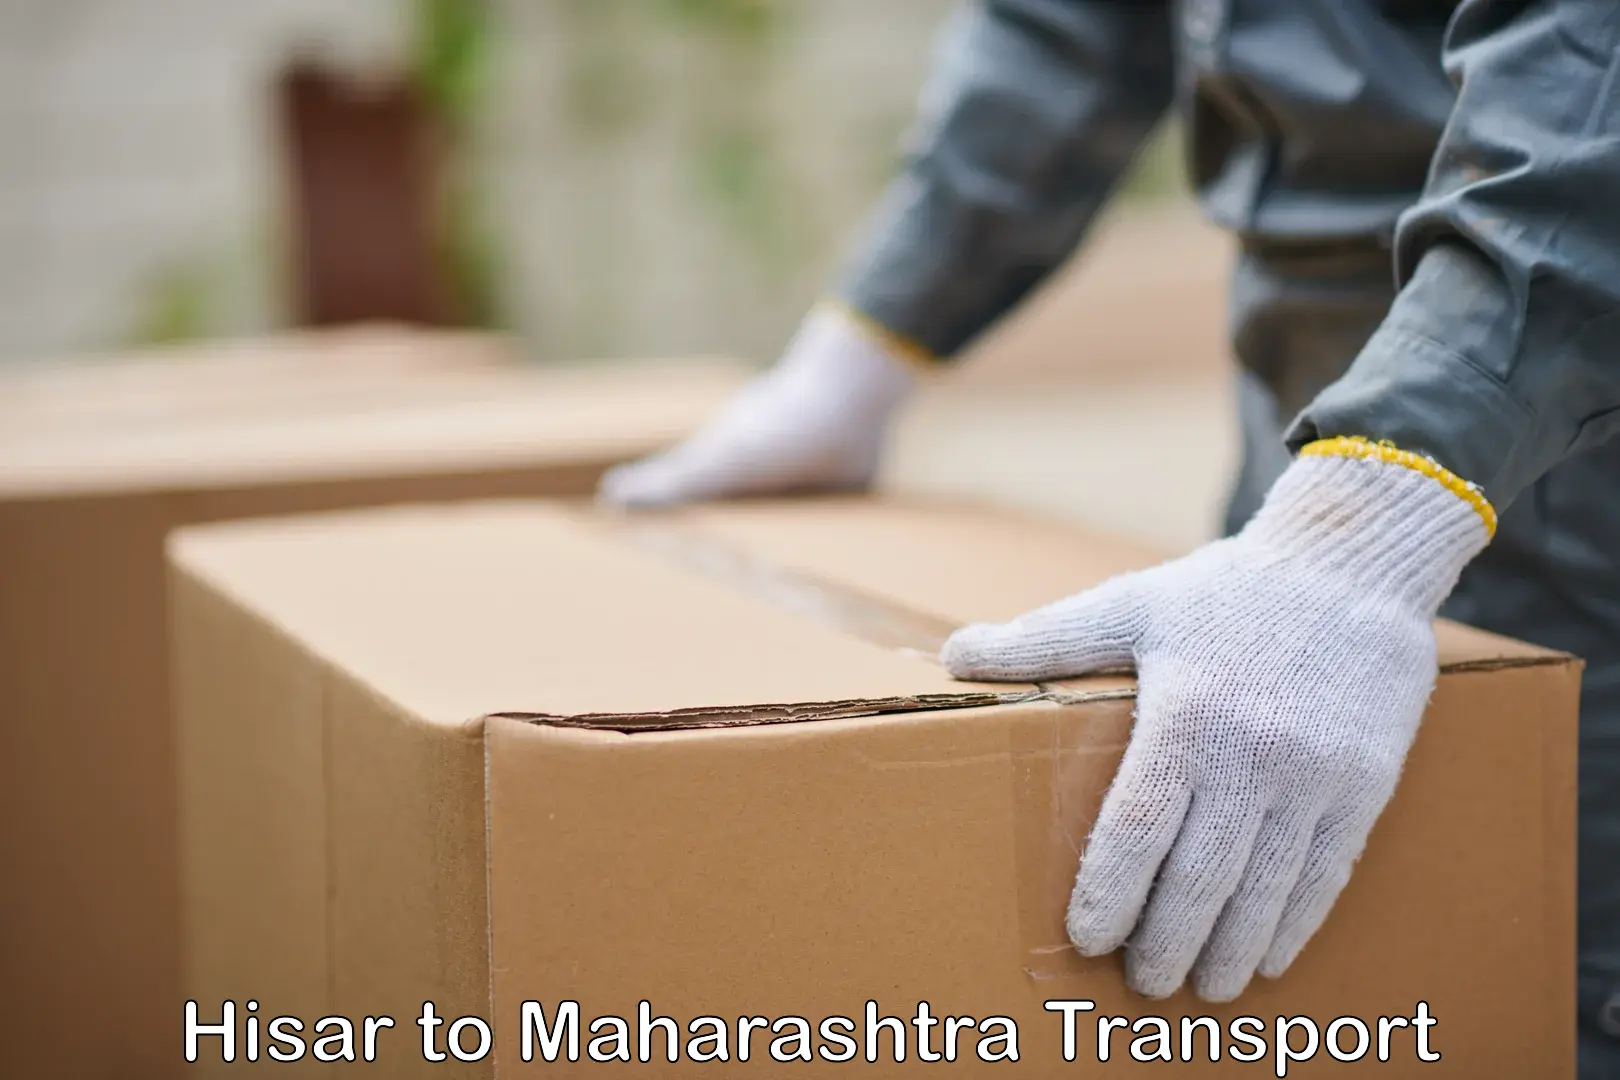 Daily parcel service transport Hisar to Maharashtra